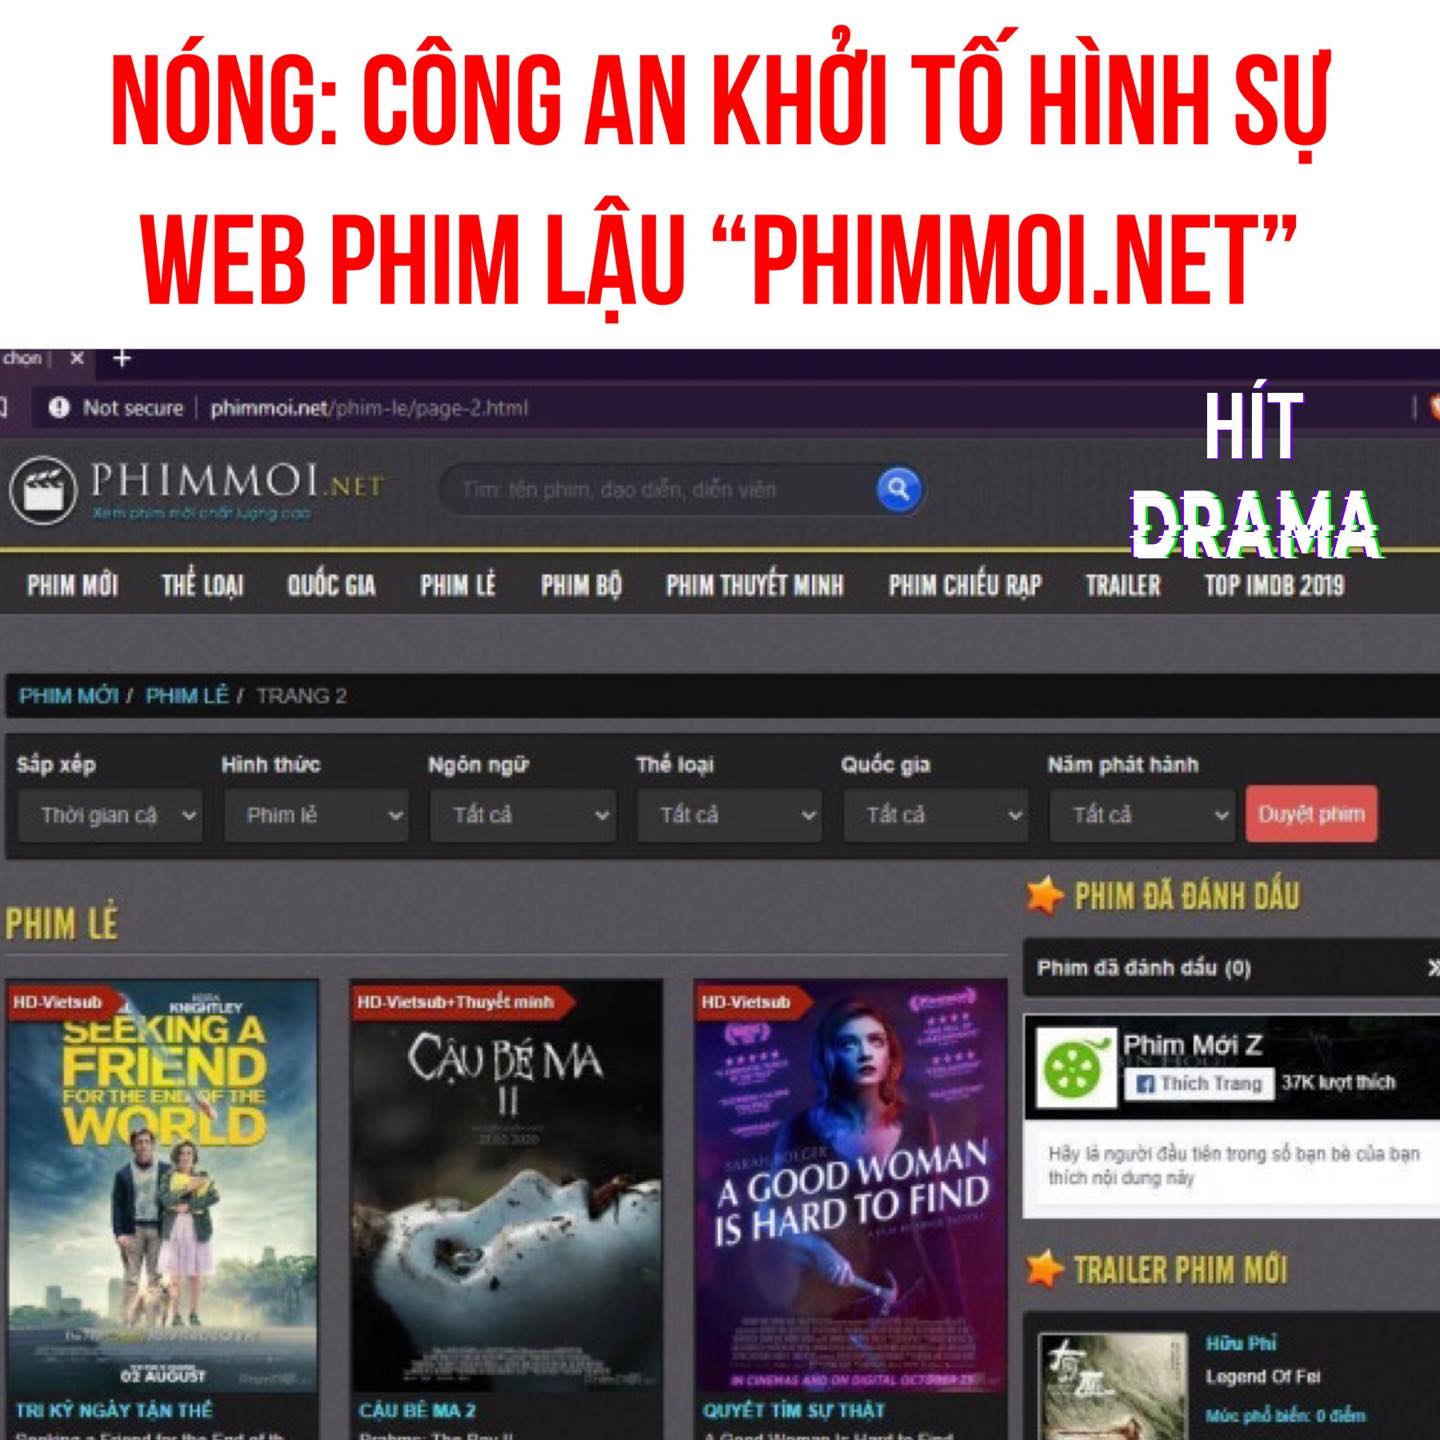 Để yên không có nghĩa là bỏ qua, CA TP. Hồ Chí Minh đã chính thức khởi tố hình sự đối với website Phimmoi.net. (Ảnh: Internet)